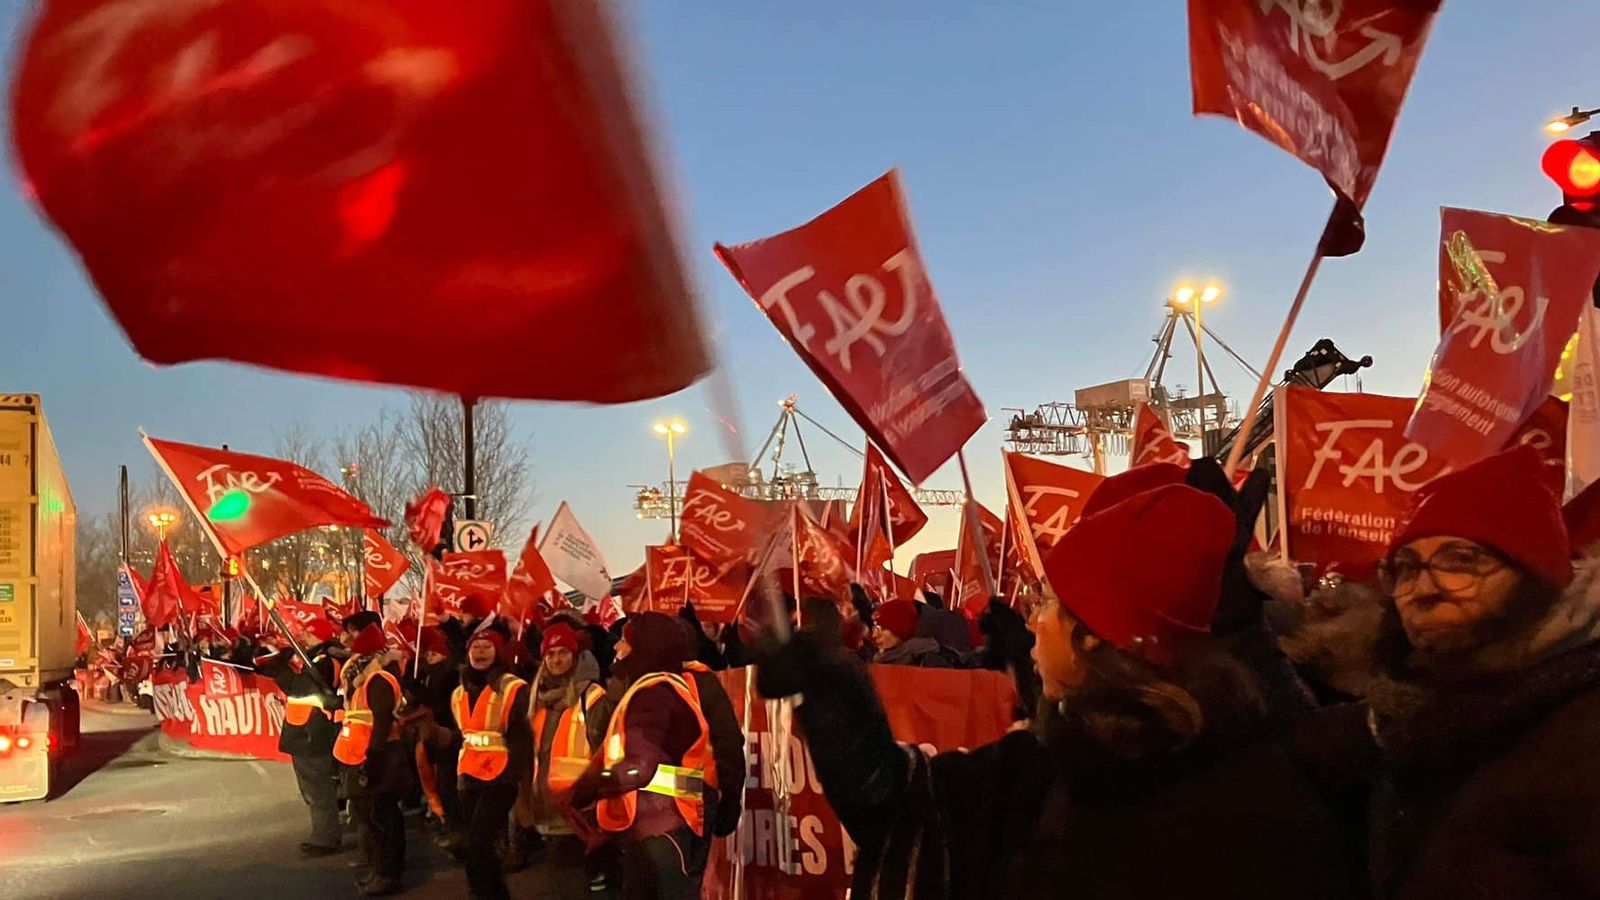 Während die Beschäftigten des öffentlichen Dienstes in Quebec auf eine Ausweitung des Kampfes drängen, verschwören sich die Gewerkschaften, um die Streikbewegung zu unterdrücken